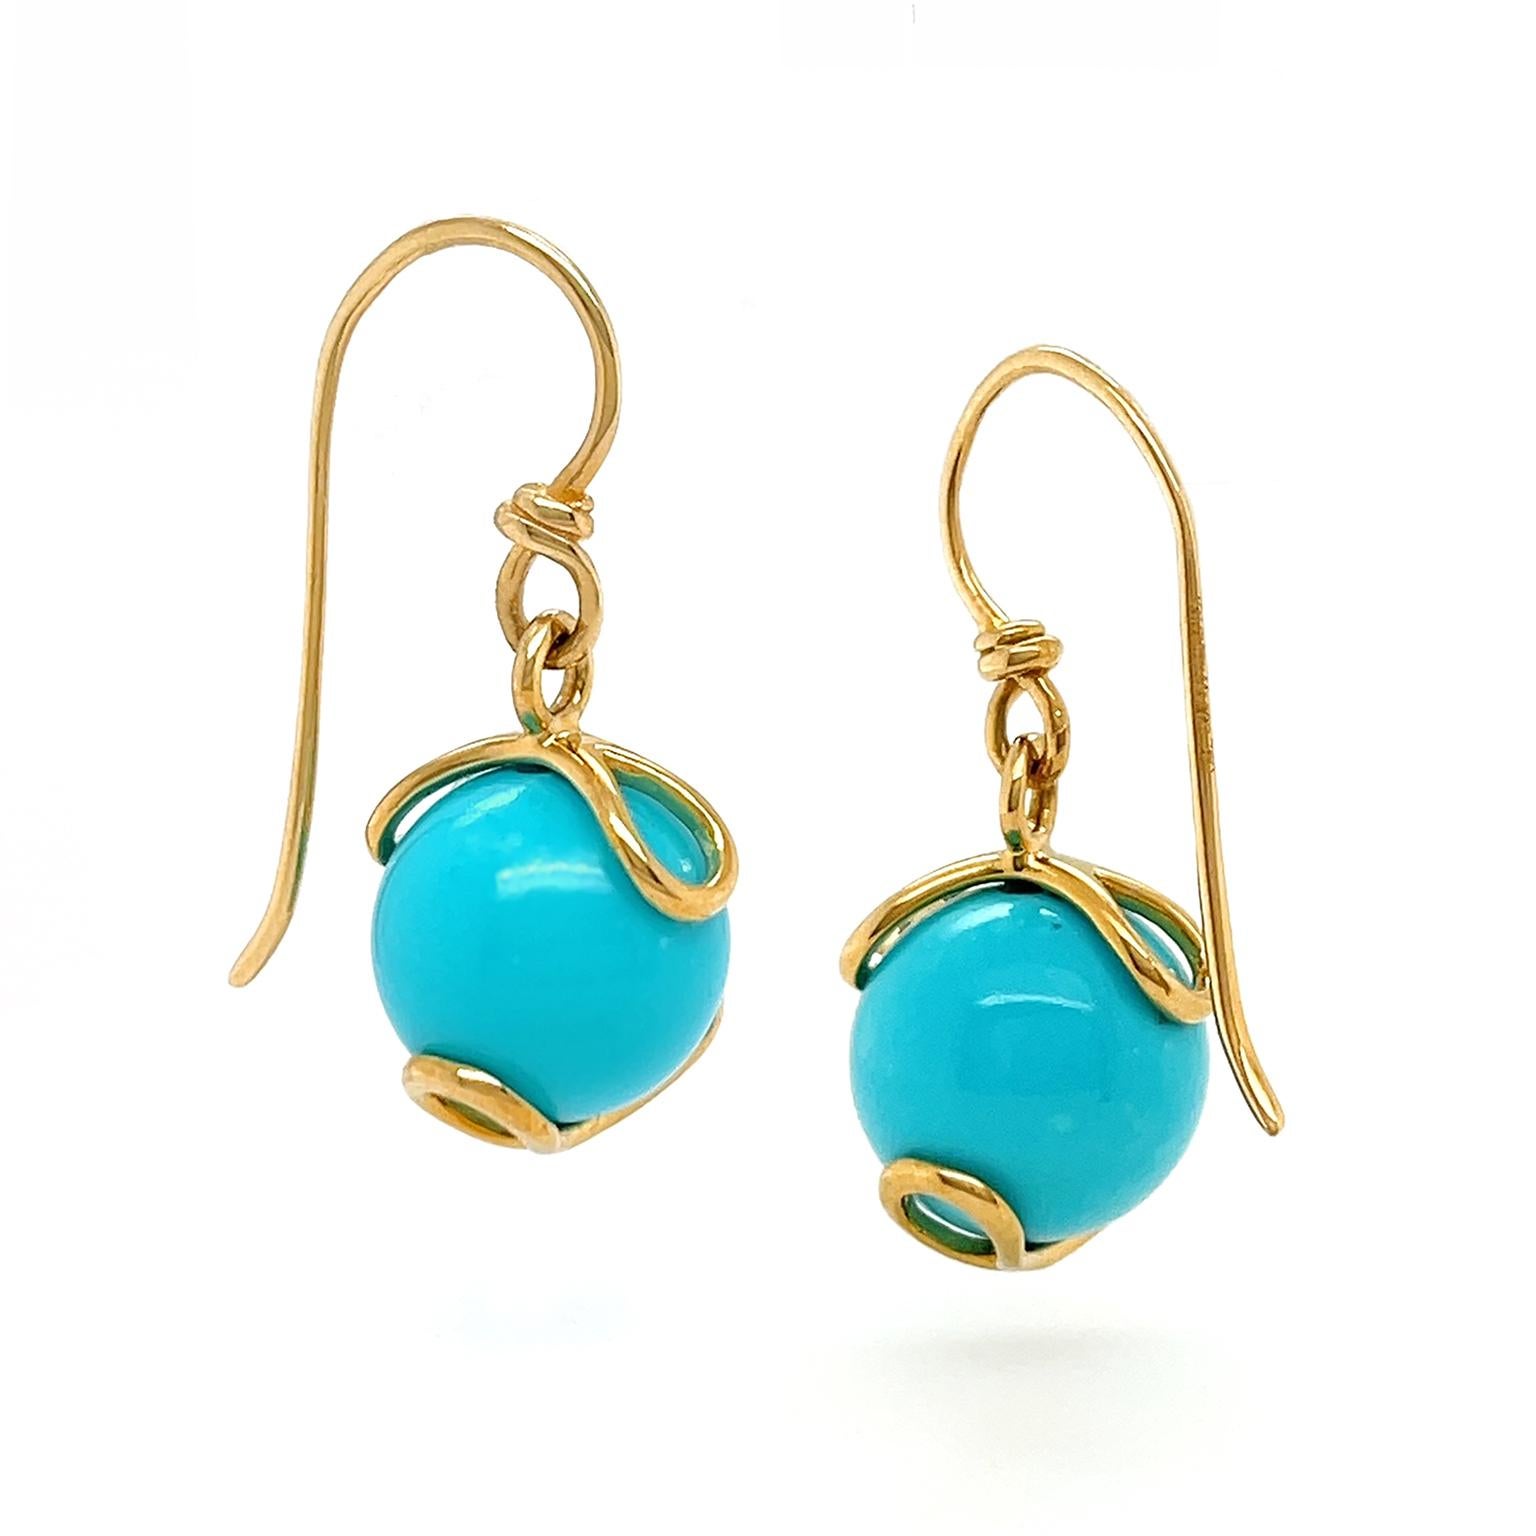 turquoise bead earrings